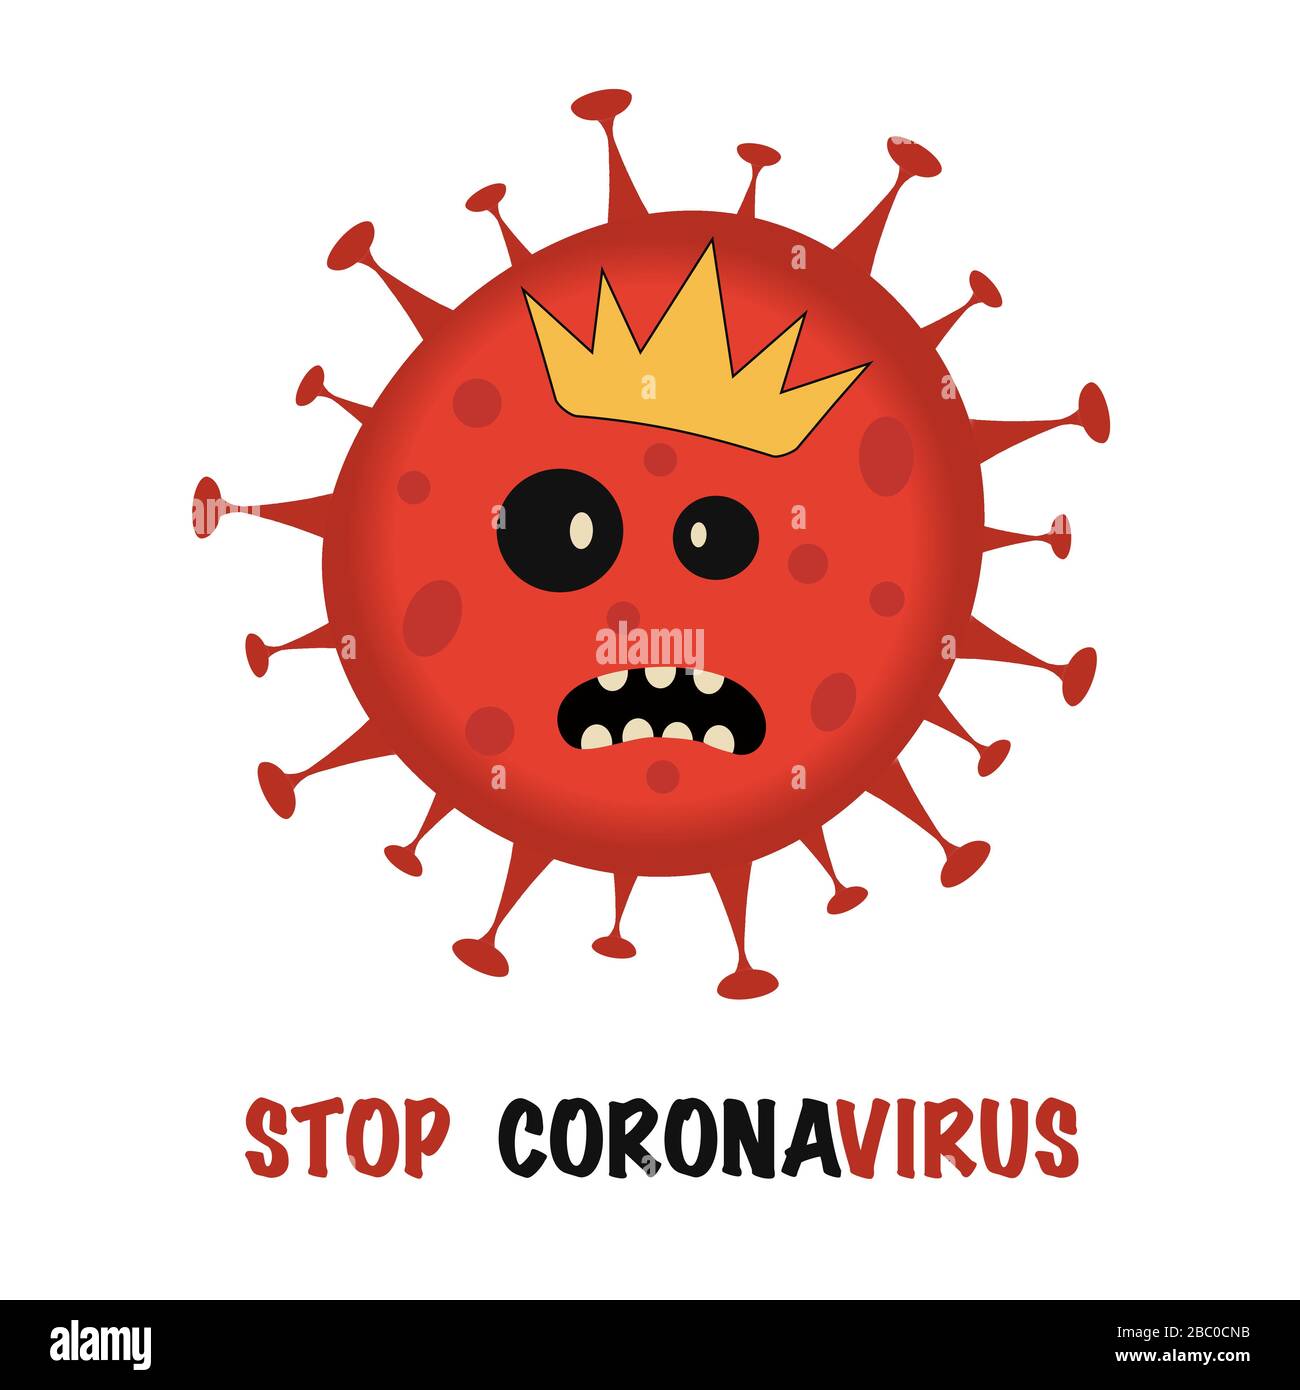 Coronavirus Bacteria Cell Icon, 2019-Nnovel Coronavirus Bacteria. Nessuna Infezione E Stop Coronavirus Concepts. Pericoloso Coronavirus Cell In Cina Illustrazione Vettoriale